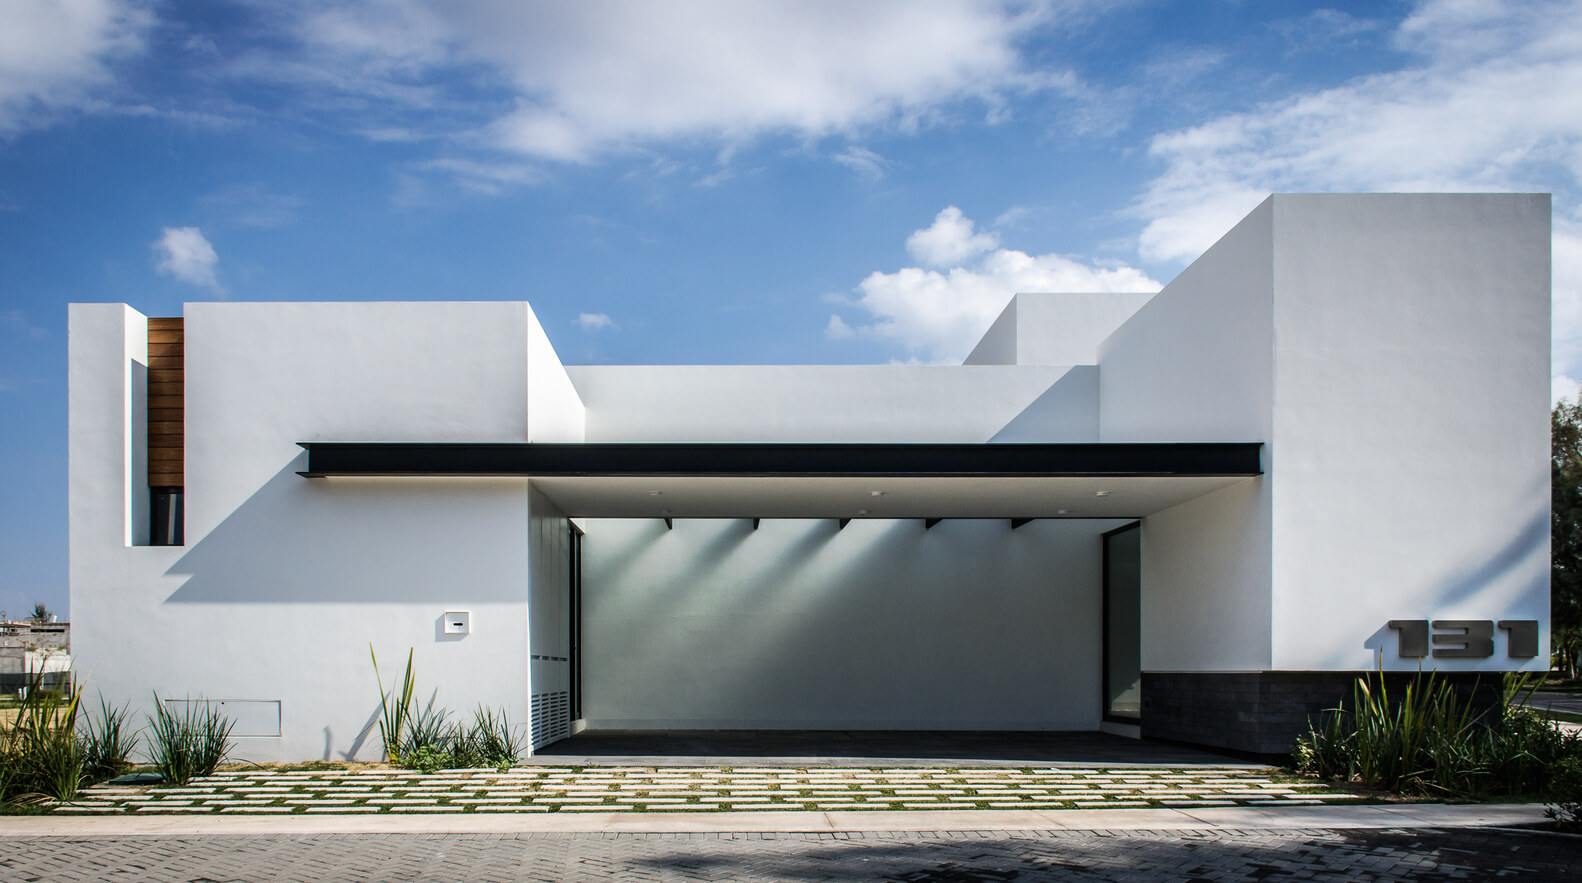 16 fachadas modernas diganas de imitar | Interiores